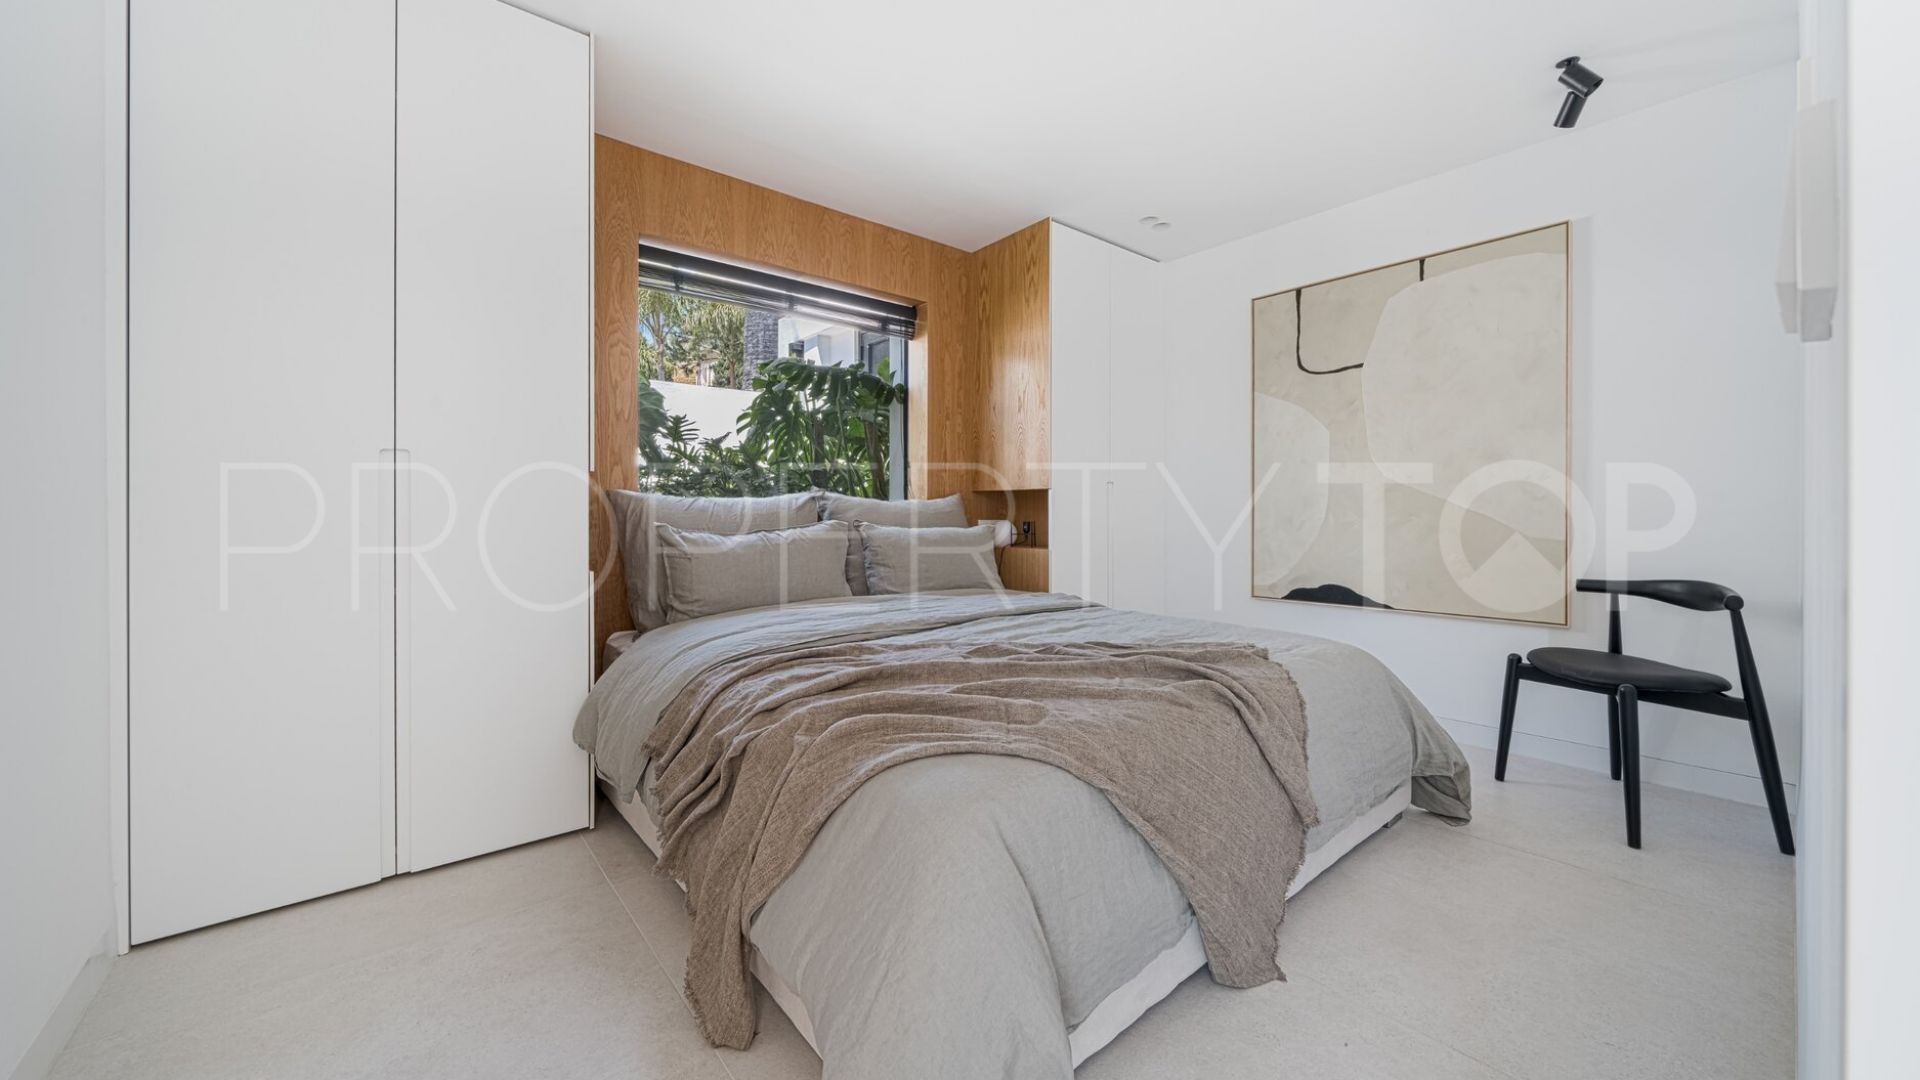 For sale villa with 4 bedrooms in Aldea Blanca